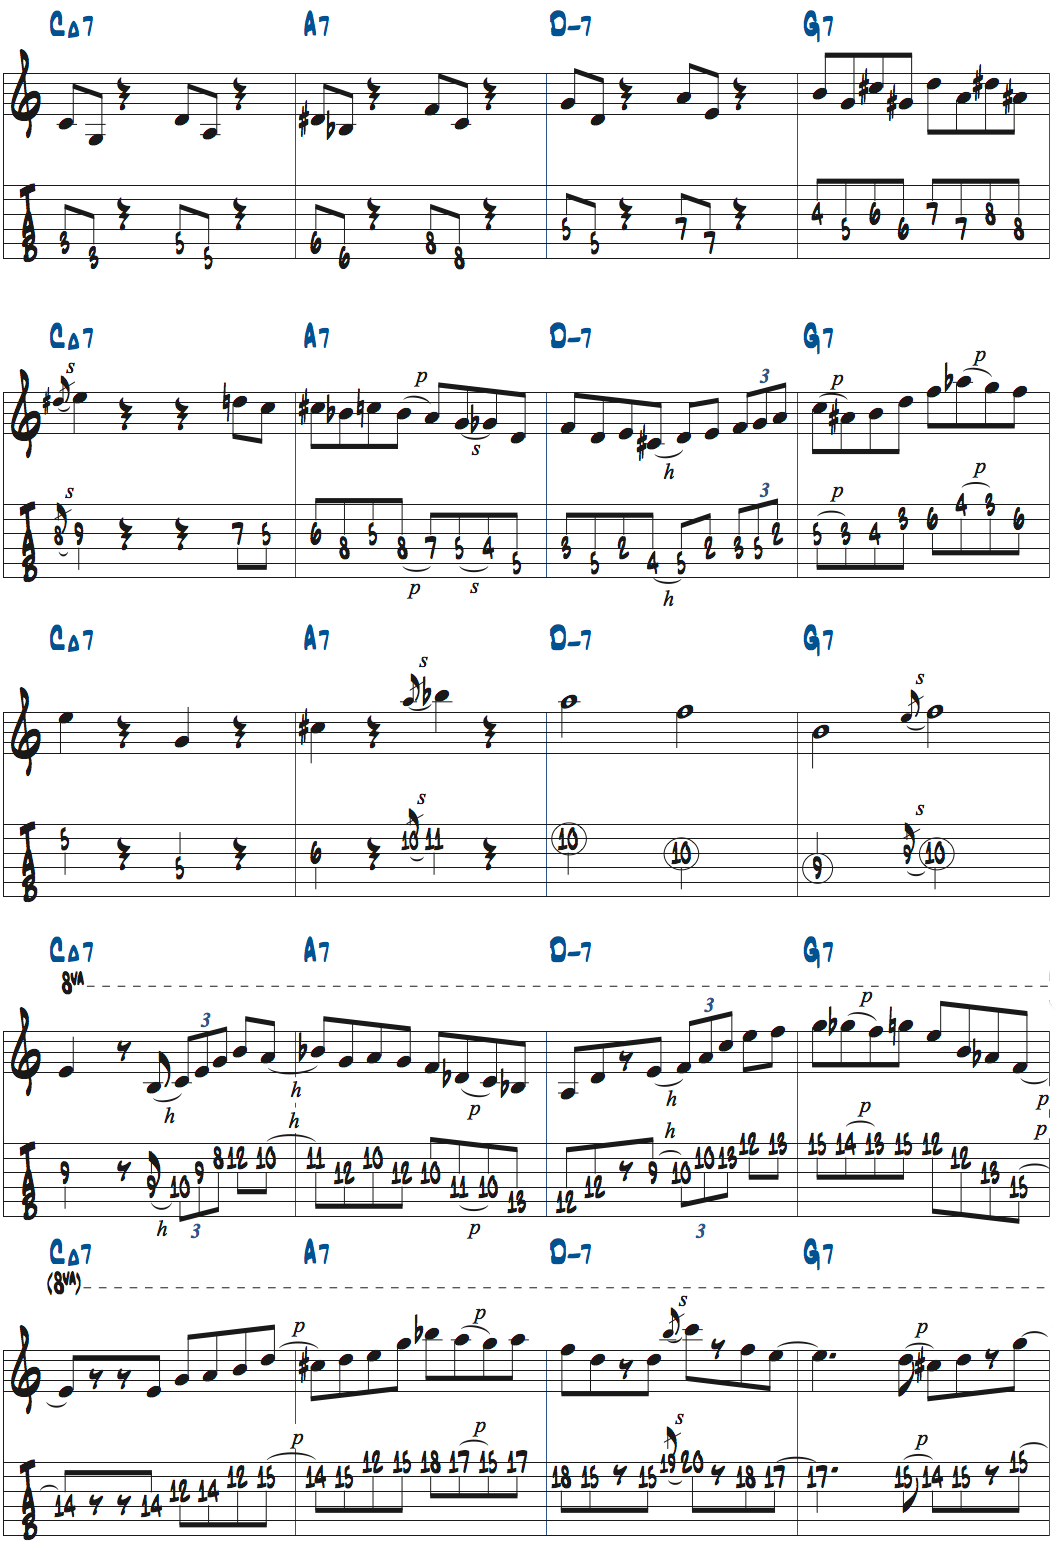 1-6-2-5でのアドリブ例3楽譜